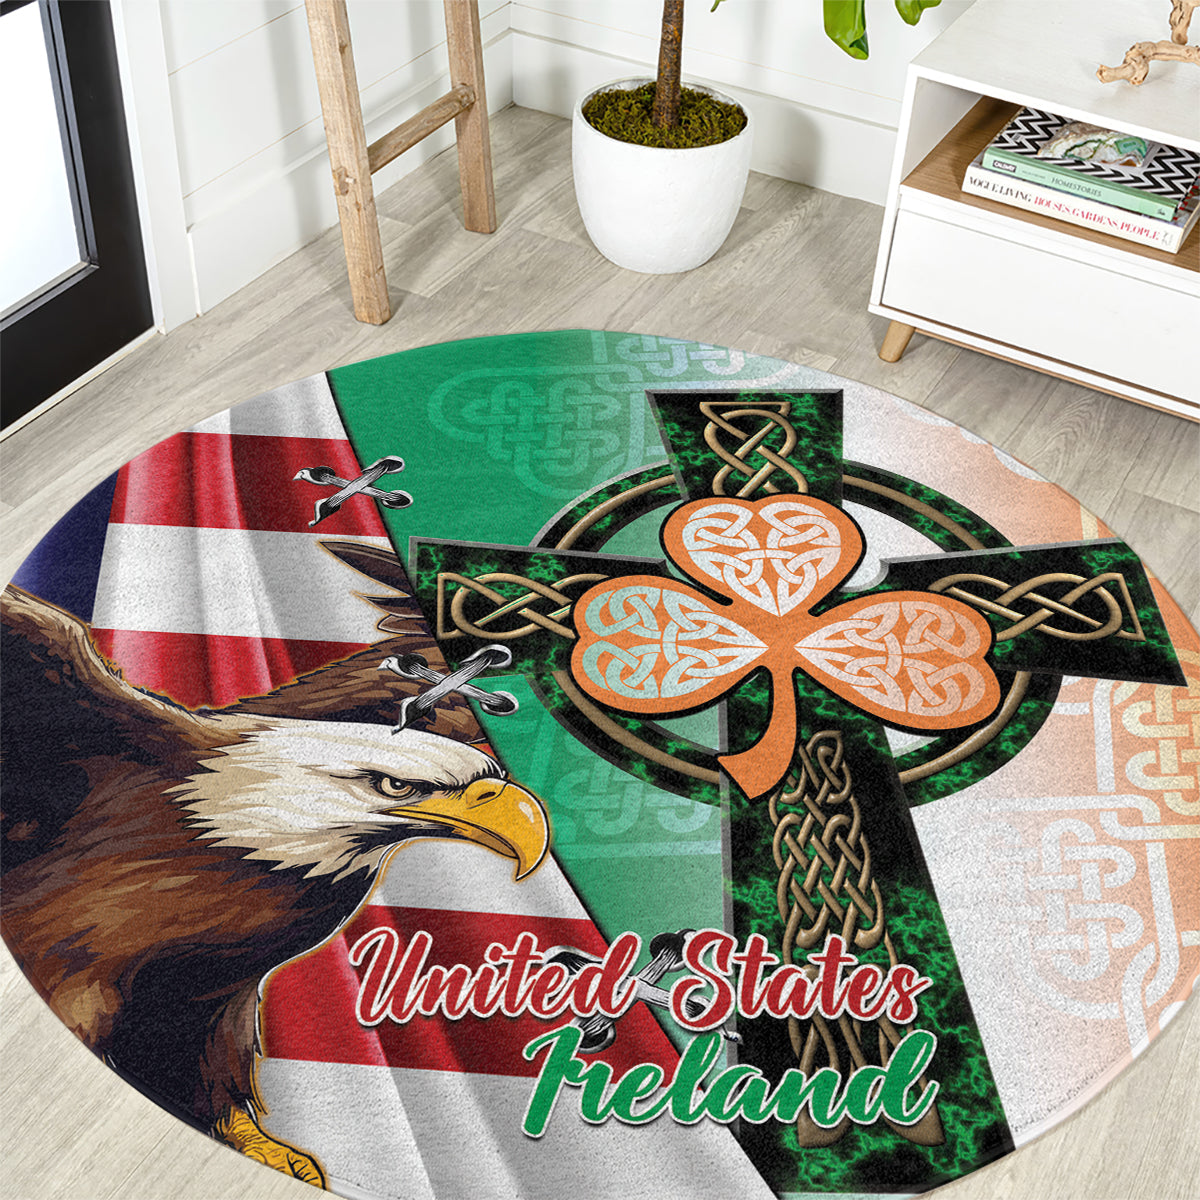 United States And Ireland Round Carpet USA Eagle With Irish Celtic Cross